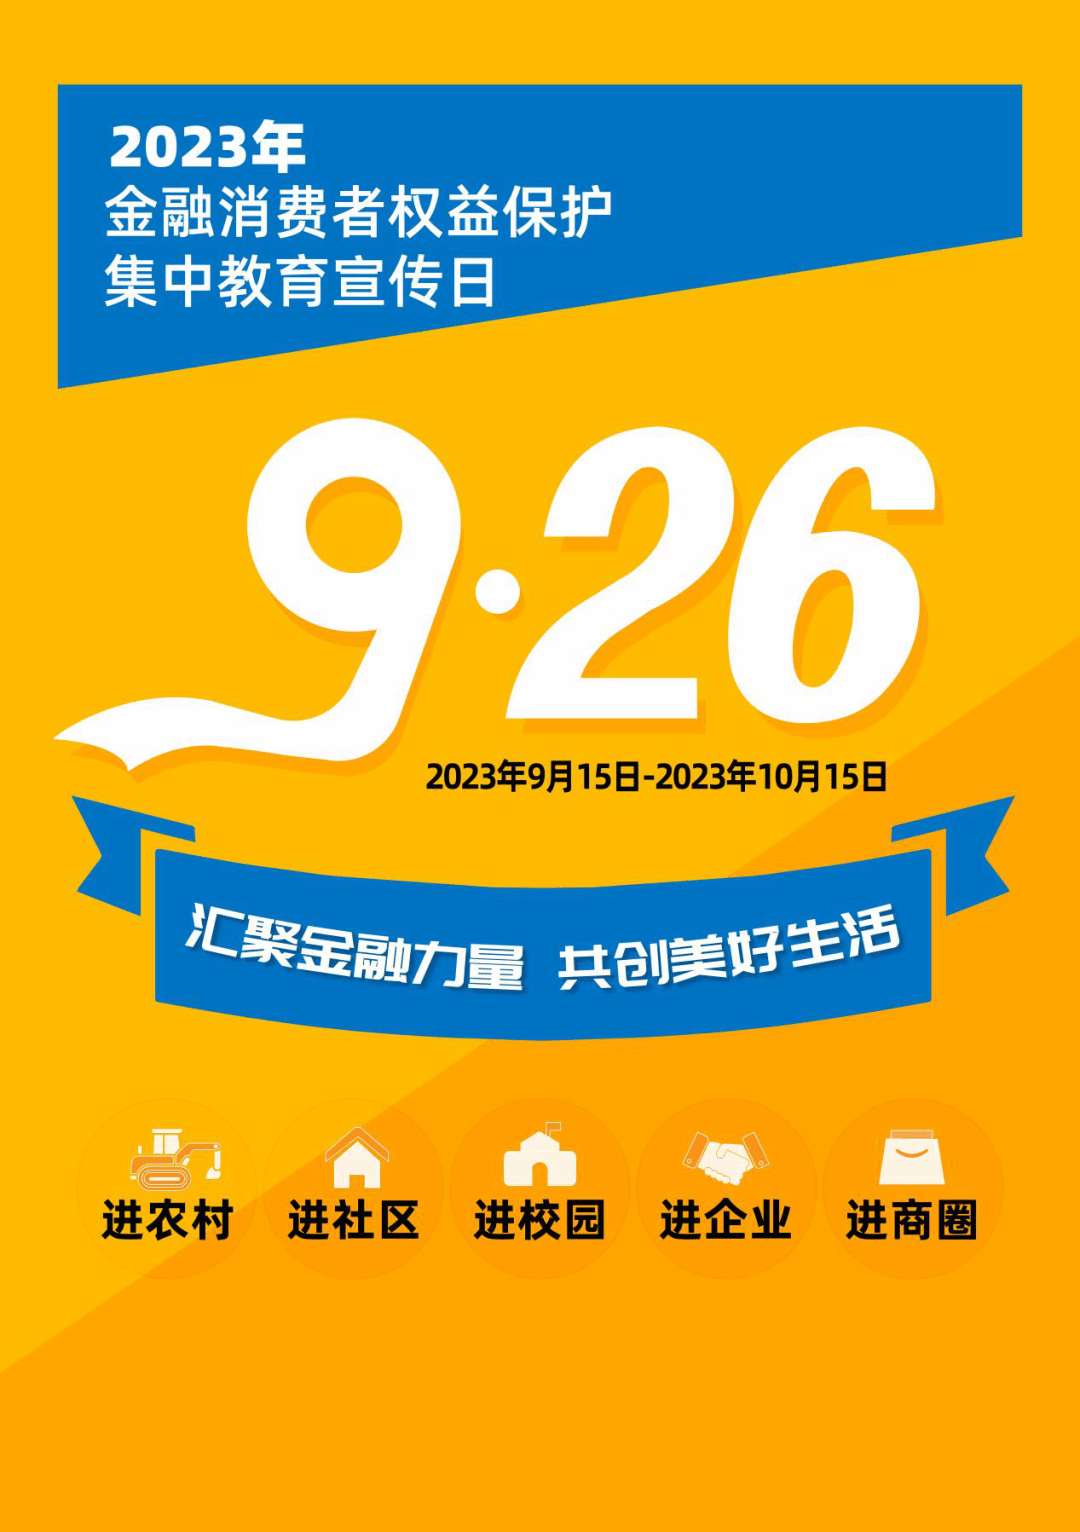 贵阳农商银行积极开展2023年“金融消费者权益保护教育宣传月”活动